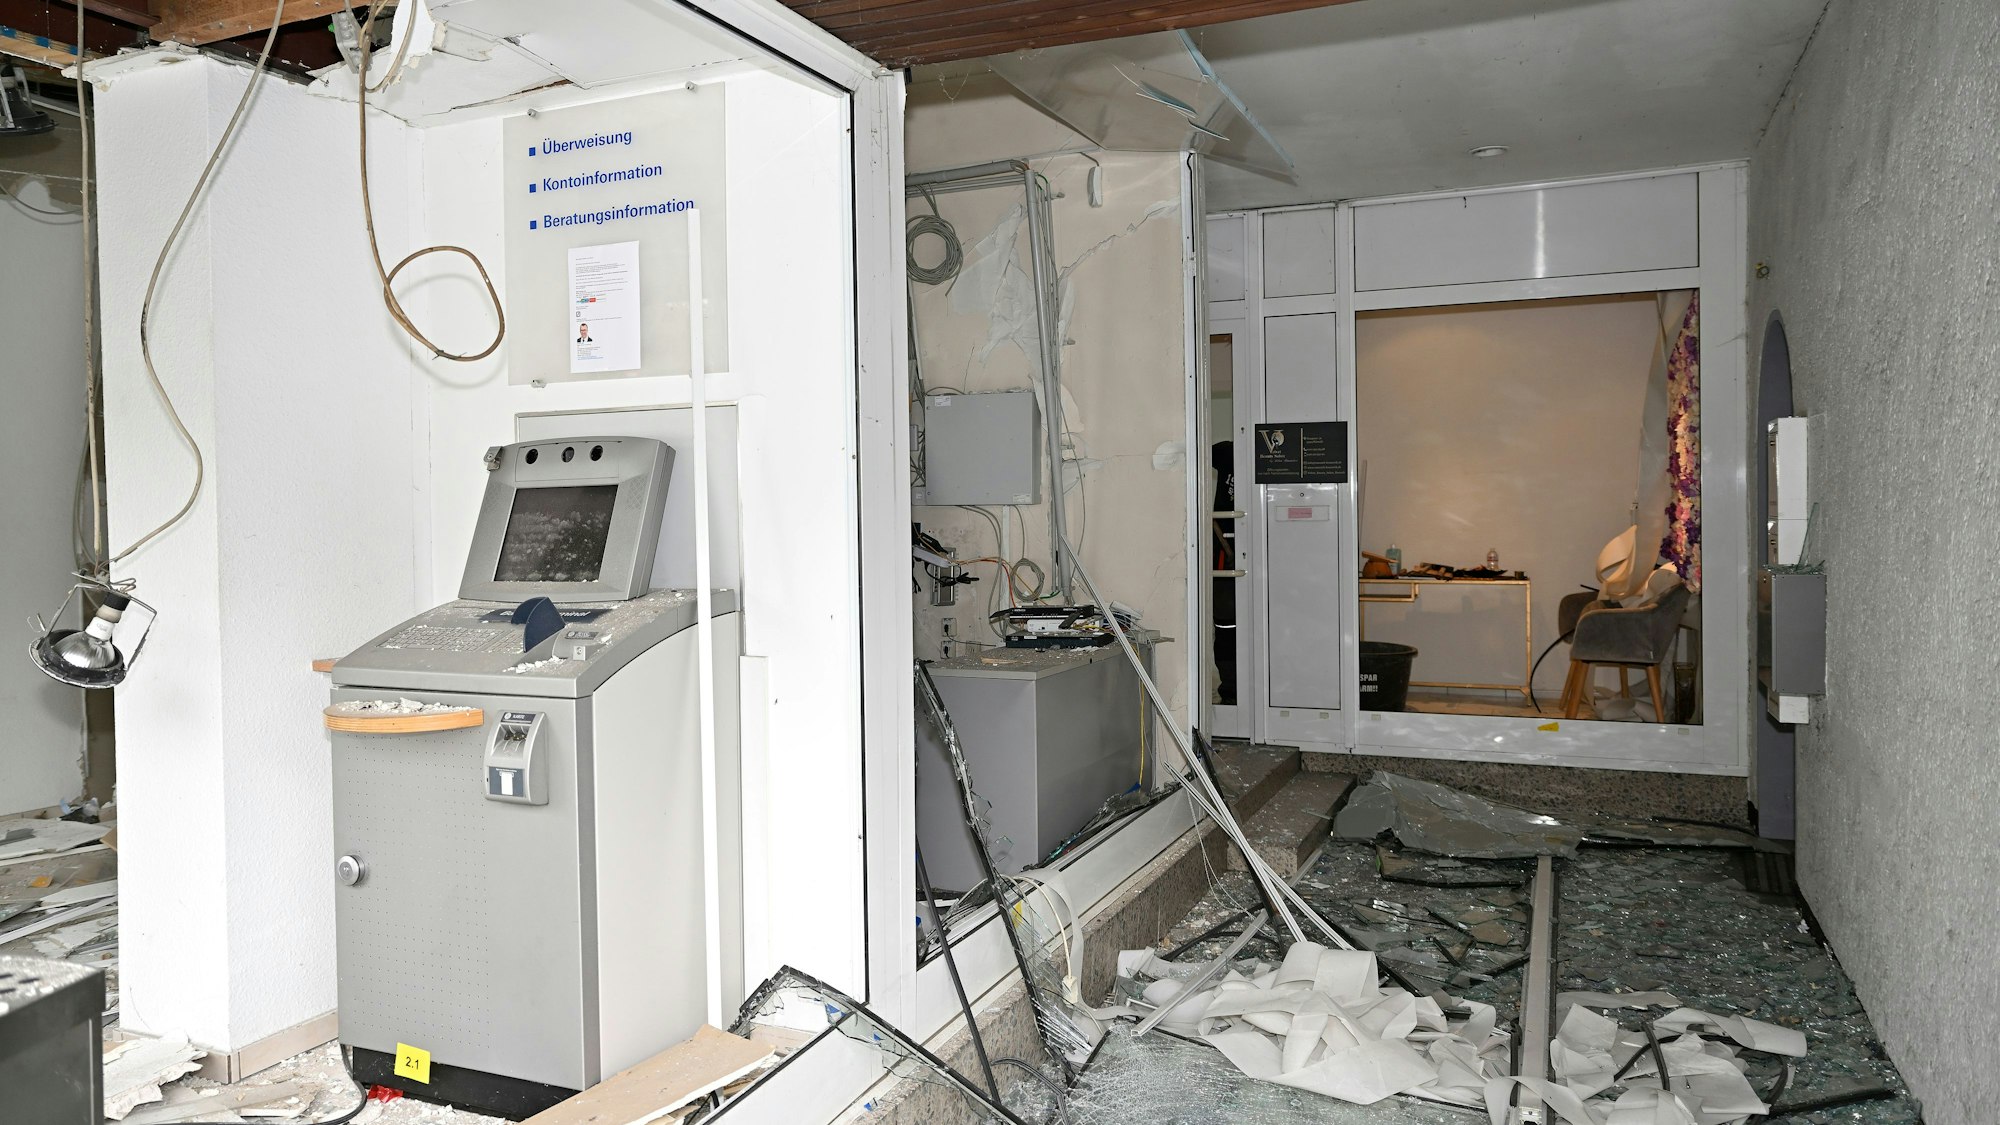 32 Menschen wurden nach einer Geldautomatensprengung in einer Deutsche-Bank-Filiale in Rösrath evakuiert. Das Bild zeigt eine verwüstete Filiale.